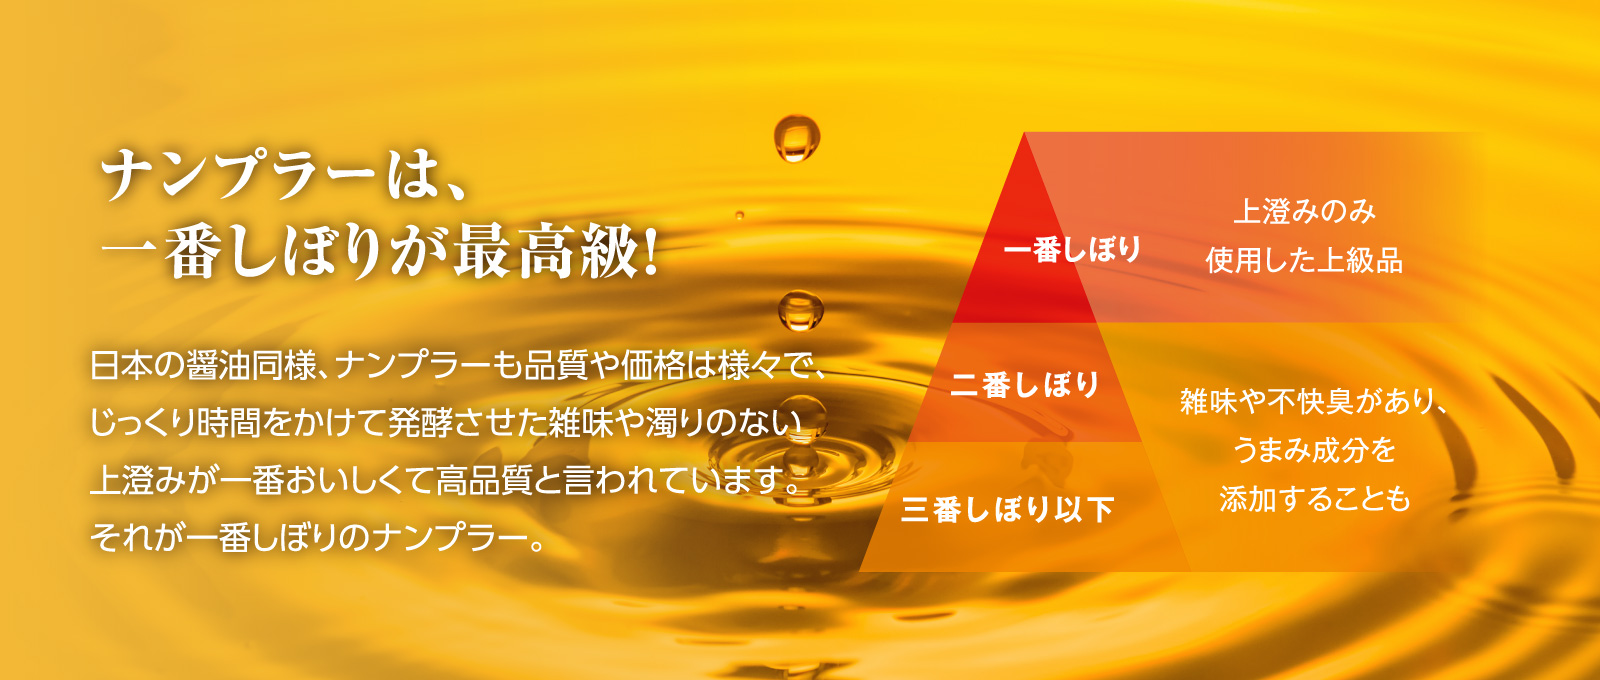 ナンプラーは、一番しぼりが最高級！　日本の醤油同様、ナンプラーも品質や価格は様々で、じっくり時間をかけて発酵させた雑味や濁りのない上澄みが一番おいしくて高品質と言われています。それが一番しぼりのナンプラー。【一番しぼり】上澄みのみ使用した上級品　【二番しぼり・三番しぼり以下】雑味や不快臭があり、うまみ成分を添加することも